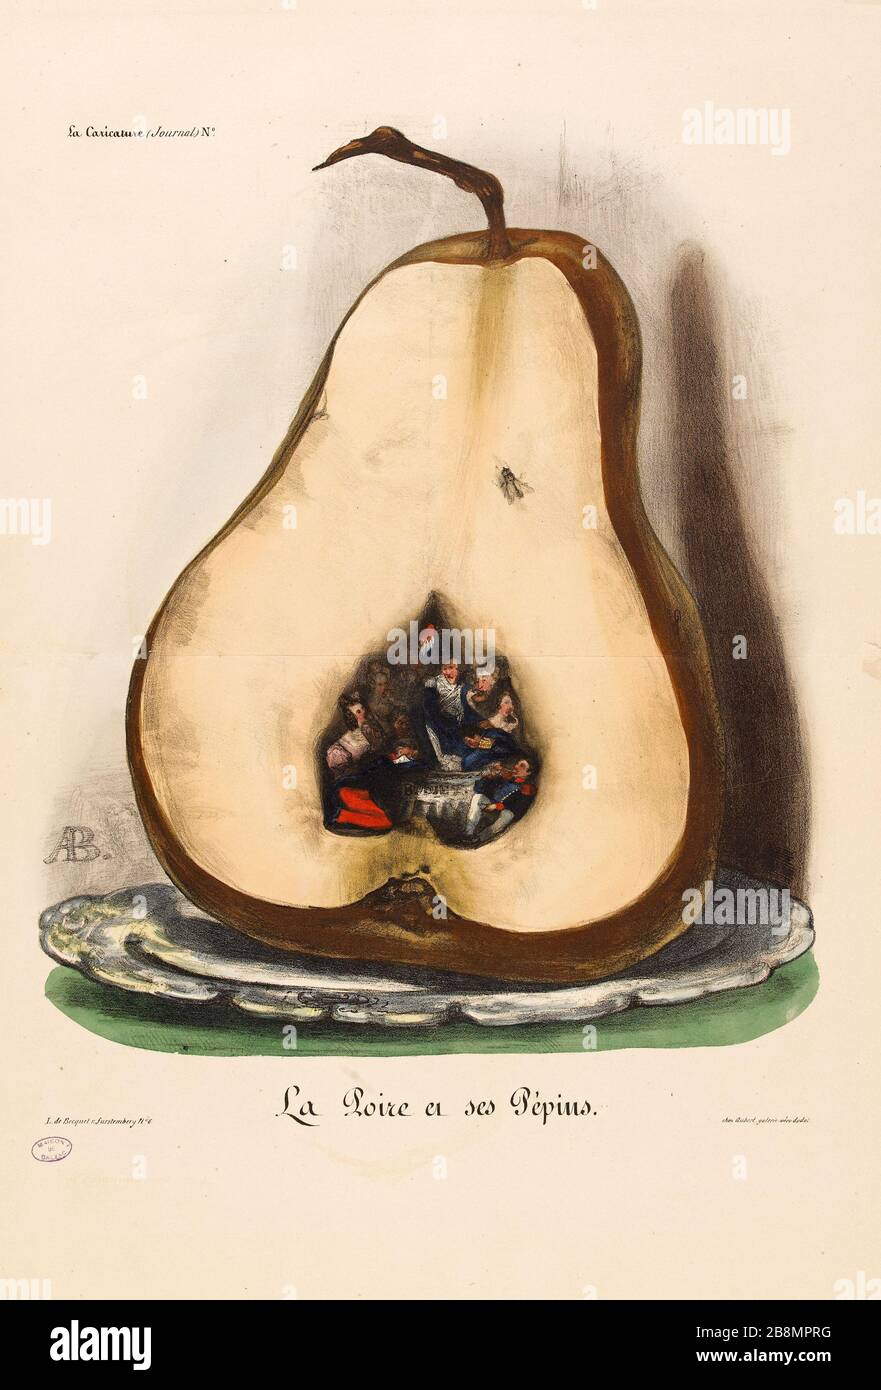 Birne und Samen, Auguste-Bouquet (1810-1846). Karikatur de Presse. "La Poire et ses Pépins". Planche parue dans 'La caricature' du 4 juillet, im Jahr 1834. Lithographie. Paris, Maison de Balzac. Stockfoto